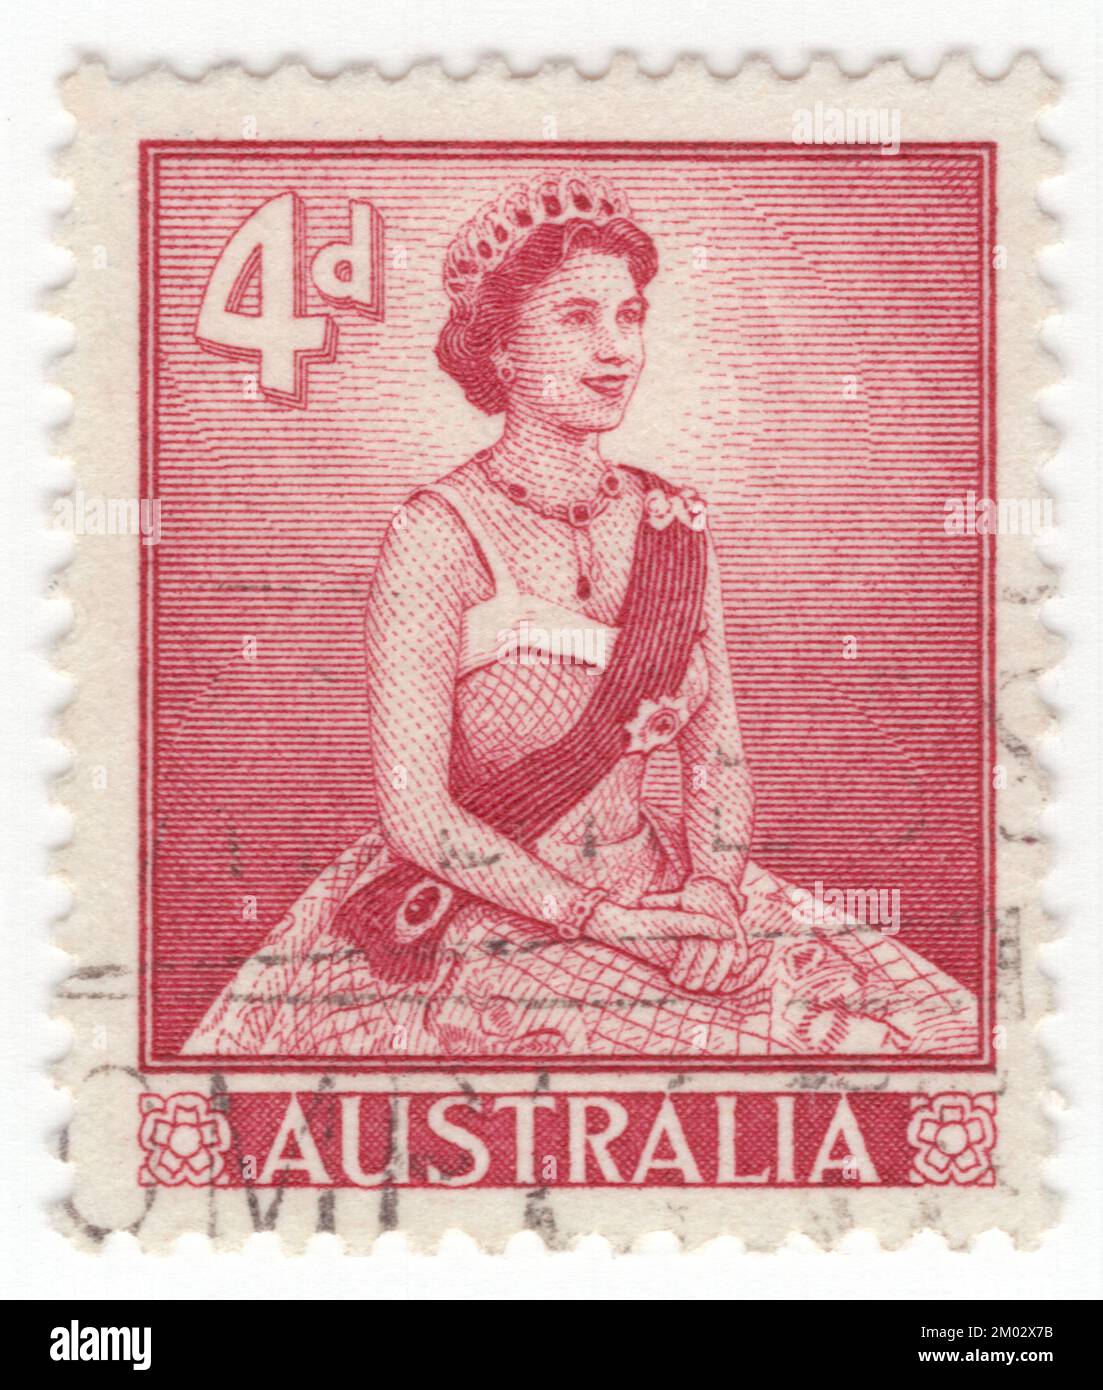 AUSTRALIE — 1959 20 mai : timbre-poste vert bleuâtre de 3 pence représentant des portraits de la reine Elizabeth II, monarque dominant de l'Australie. Elizabeth II a été la première monarque en titre de l'Australie à mettre le pied sur le sol australien, arrivant à terre à Farm Cove, Sydney, le 3 février 1954. Elle a entrepris un voyage à travers le territoire de la capitale australienne, la Nouvelle-Galles du Sud, la Tasmanie, Victoria, Queensland, Australie méridionale et Australie occidentale, y compris l'accueil de 70 000 ex-militaires au Melbourne Cricket Ground et l'ouverture du Parlement australien à Canberra Banque D'Images